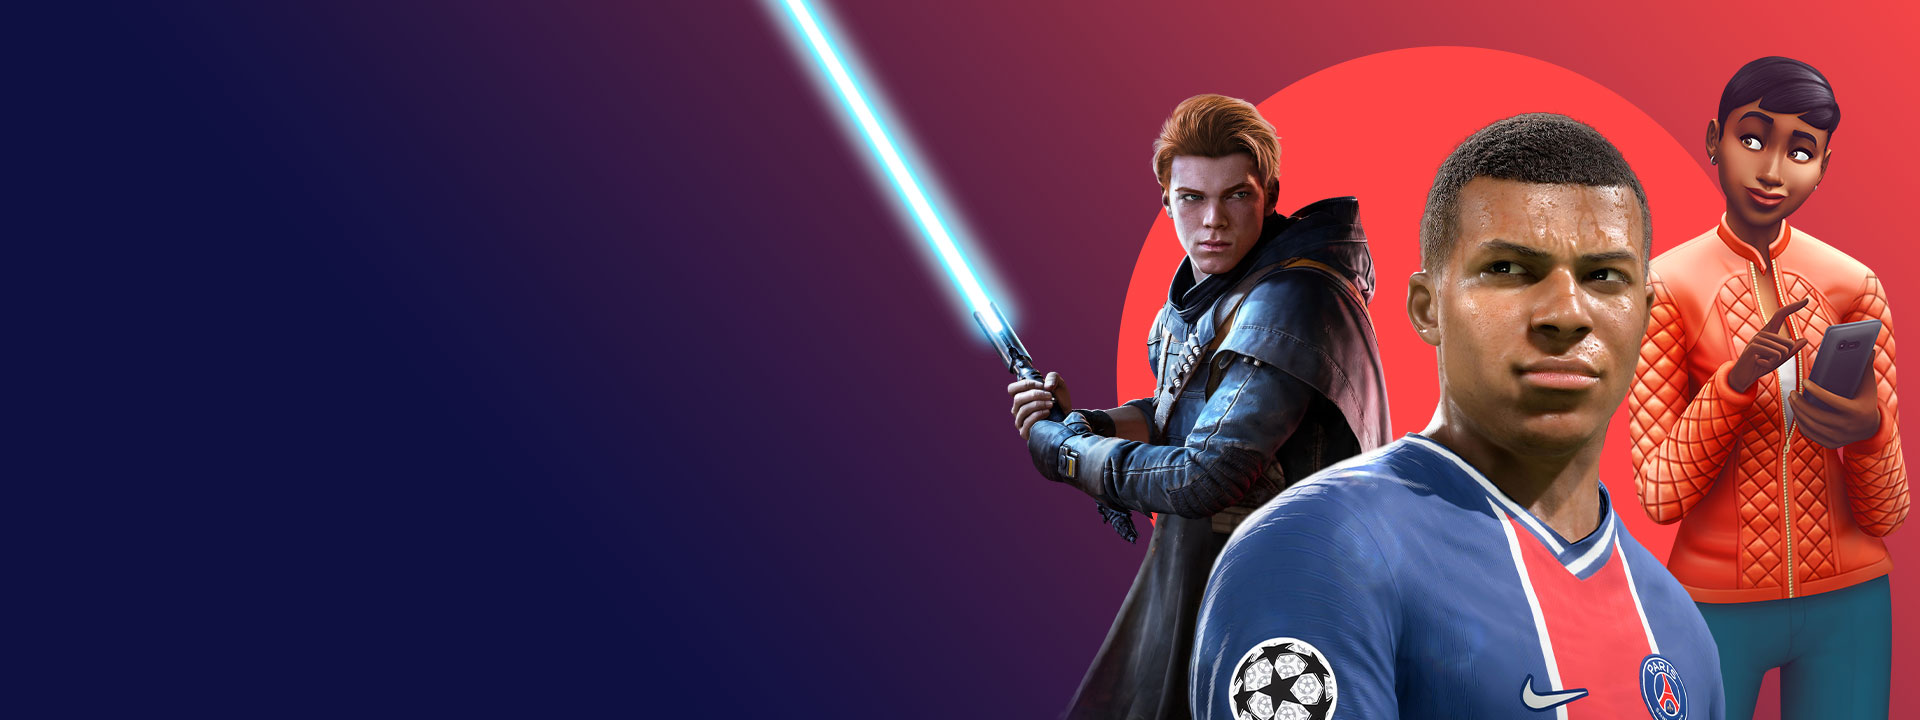 Illustrations de jeux EA compris dans le Xbox Game Pass, notamment Star Wars Jedi: Fallen Order, FIFA 22 et Les Sims 4.